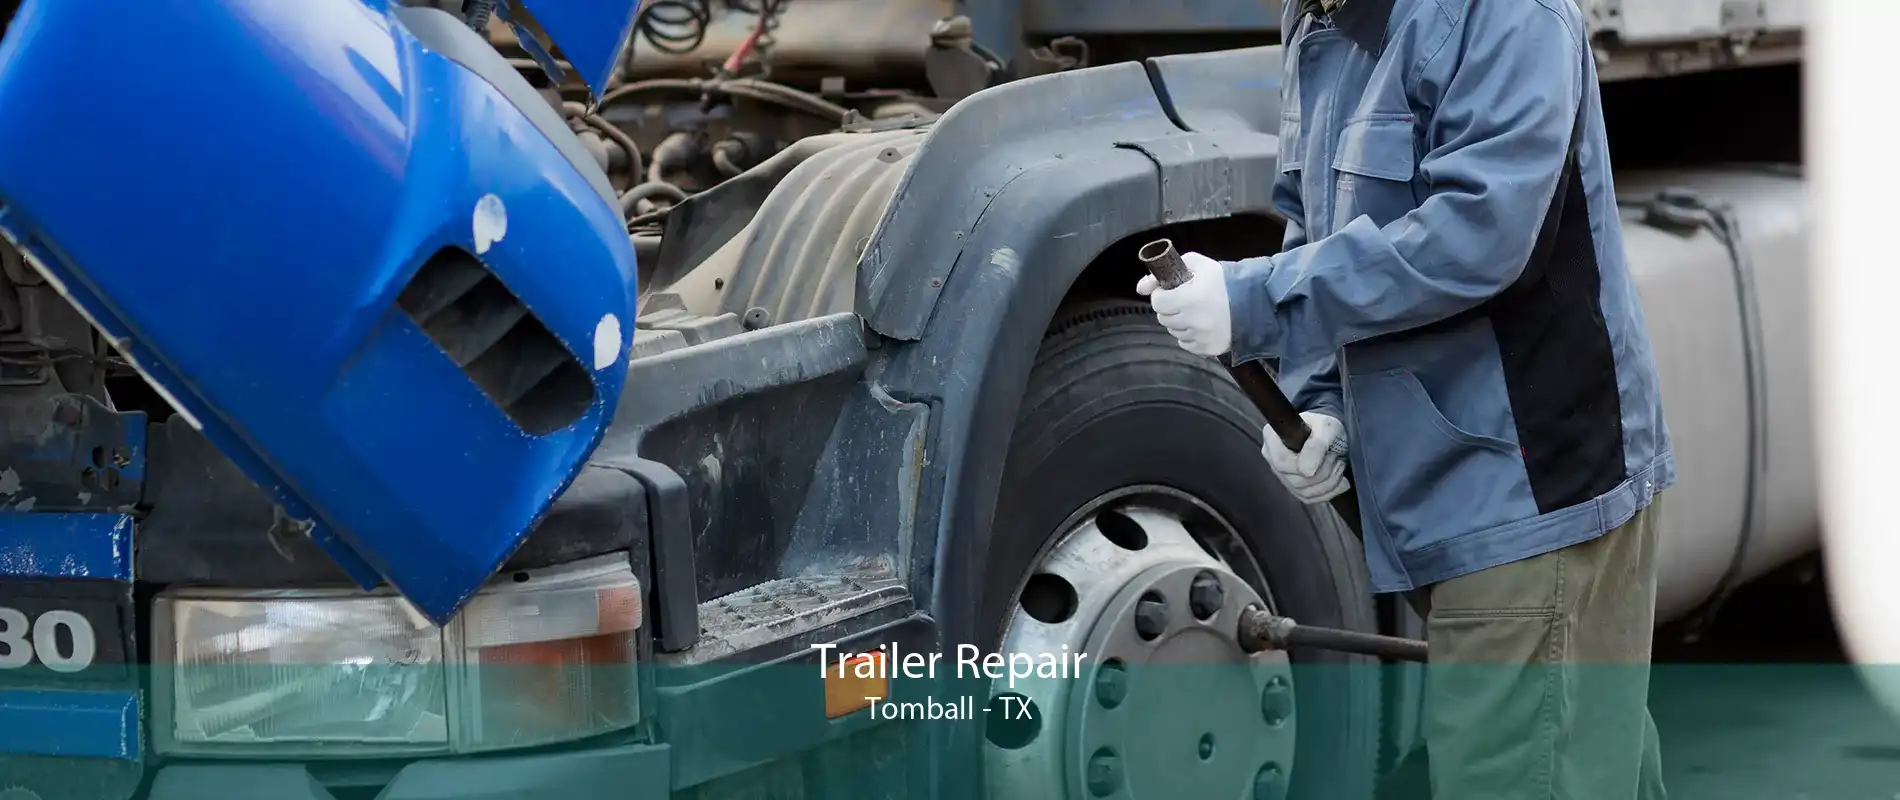 Trailer Repair Tomball - TX